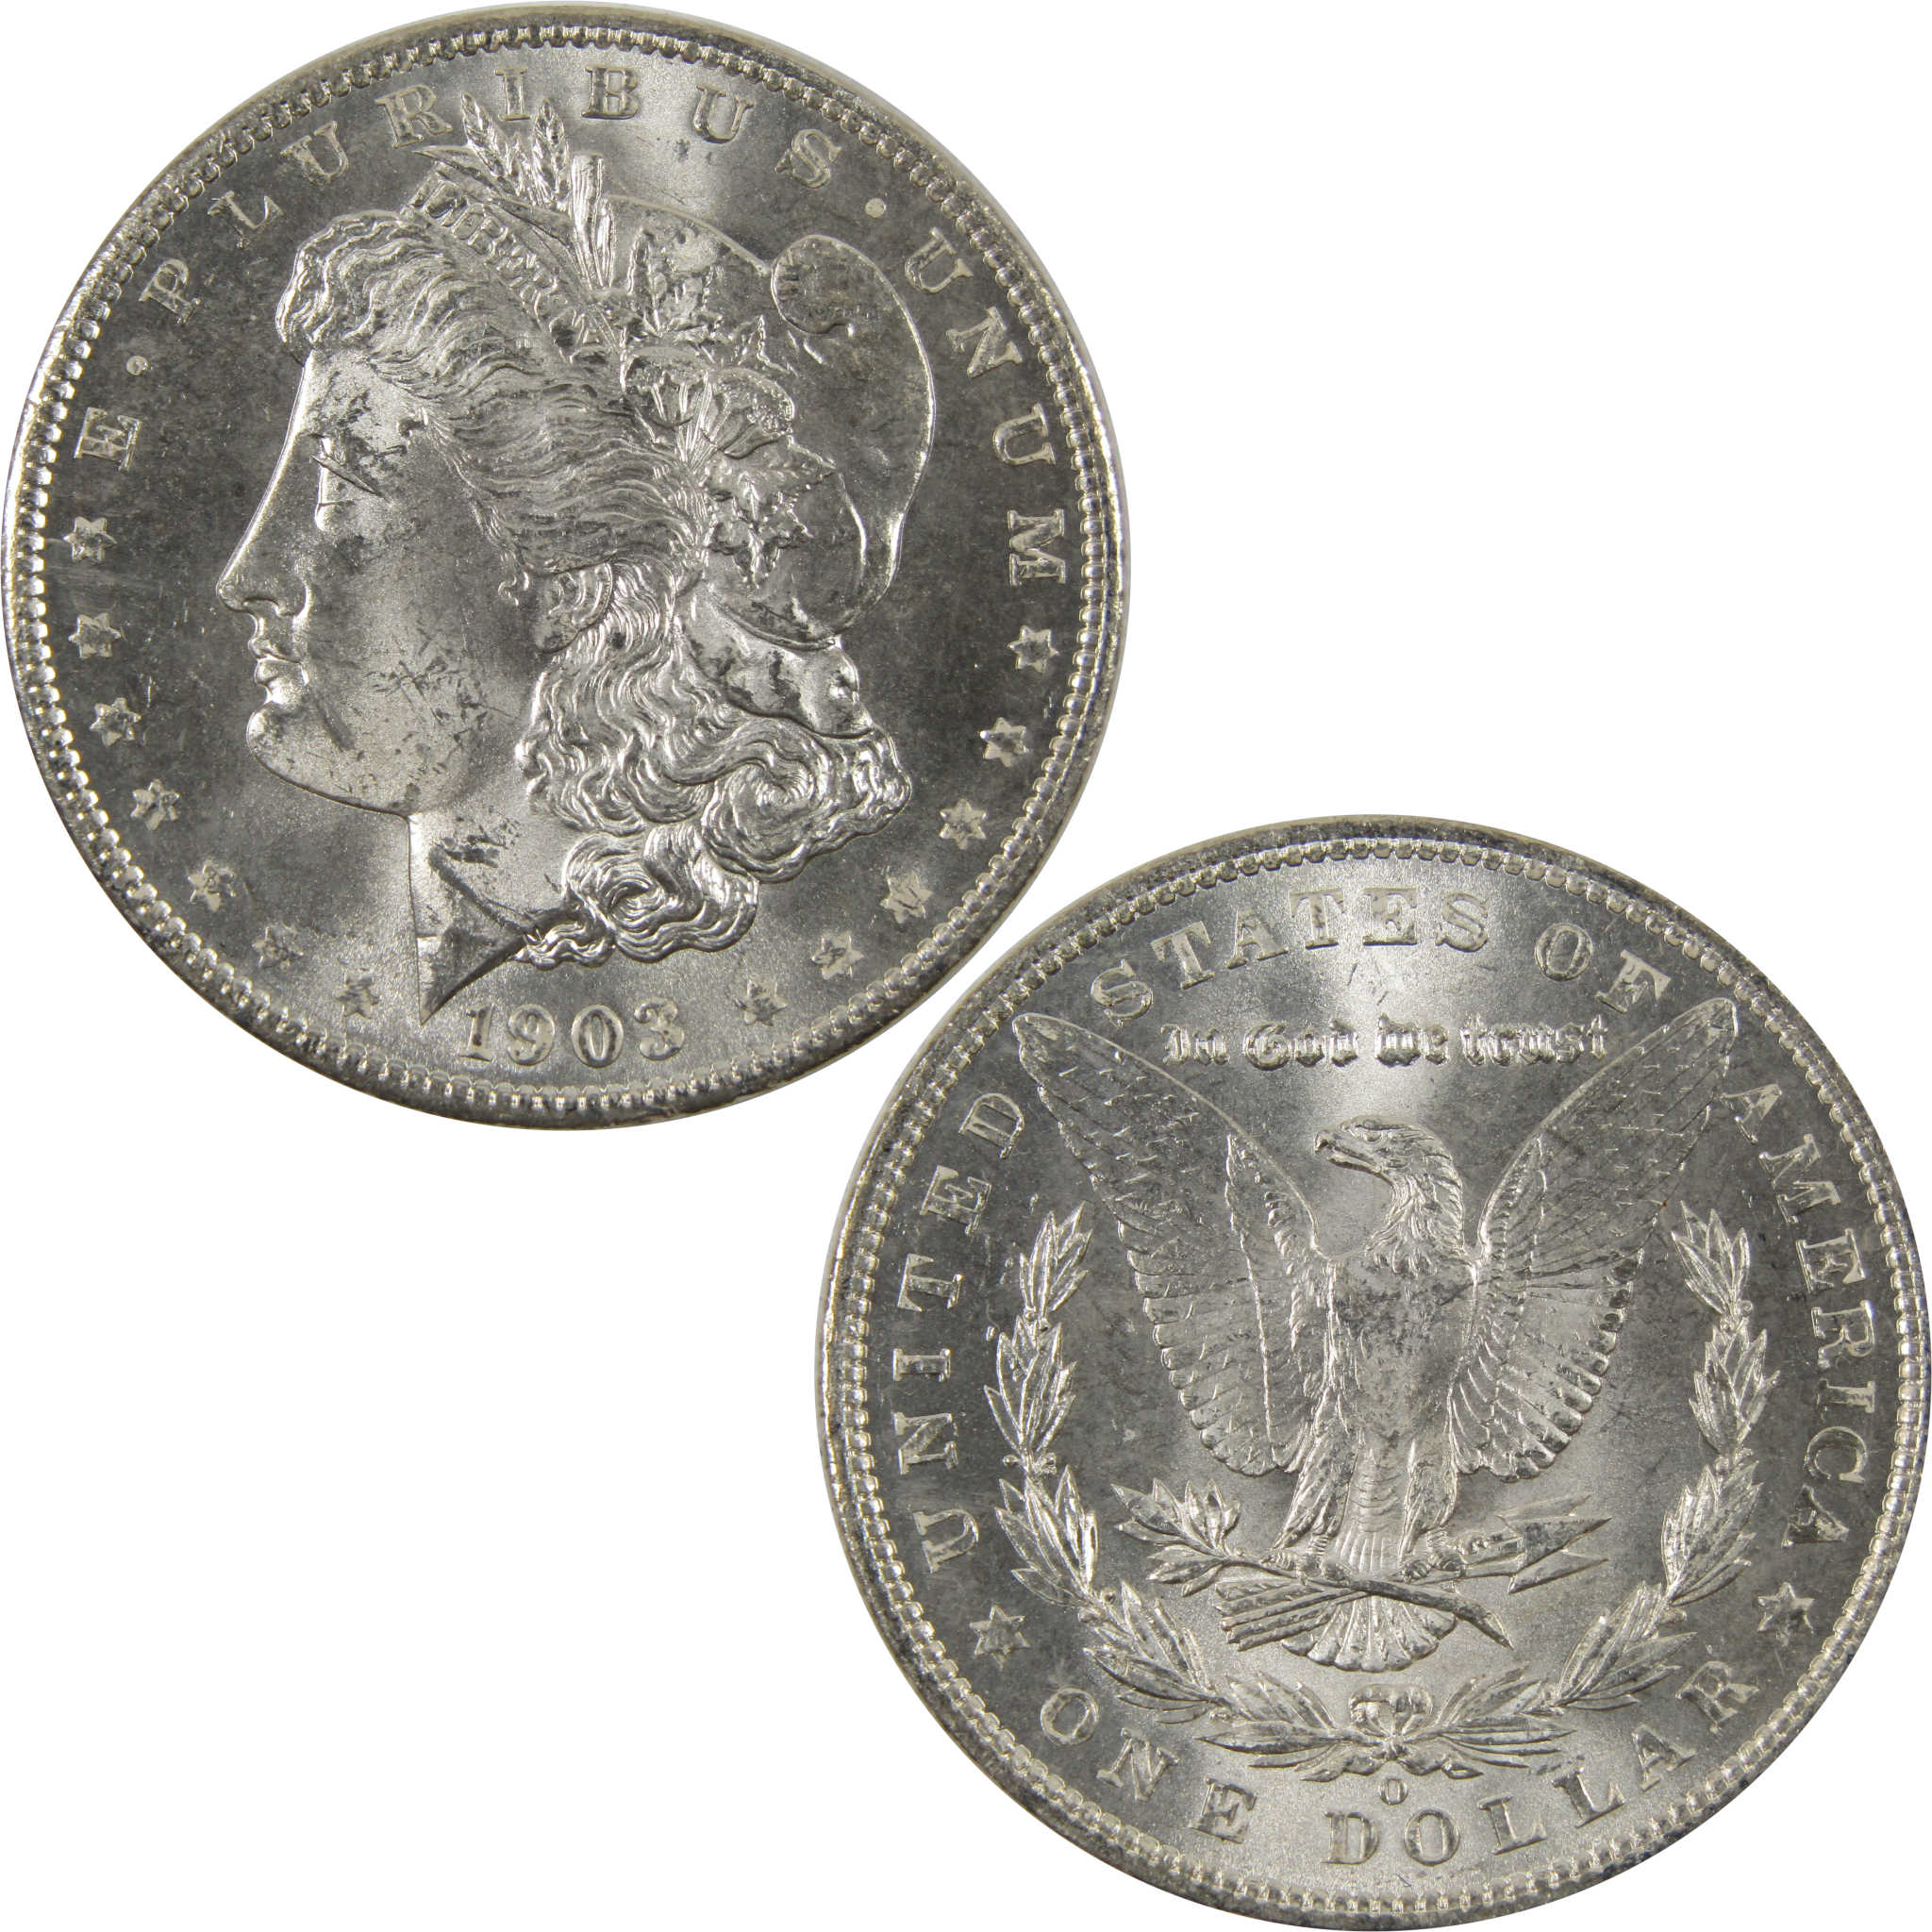 1903 O Morgan Dollar BU Choice Uncirculated 90% Silver $1 SKU:I7509 - Morgan coin - Morgan silver dollar - Morgan silver dollar for sale - Profile Coins &amp; Collectibles